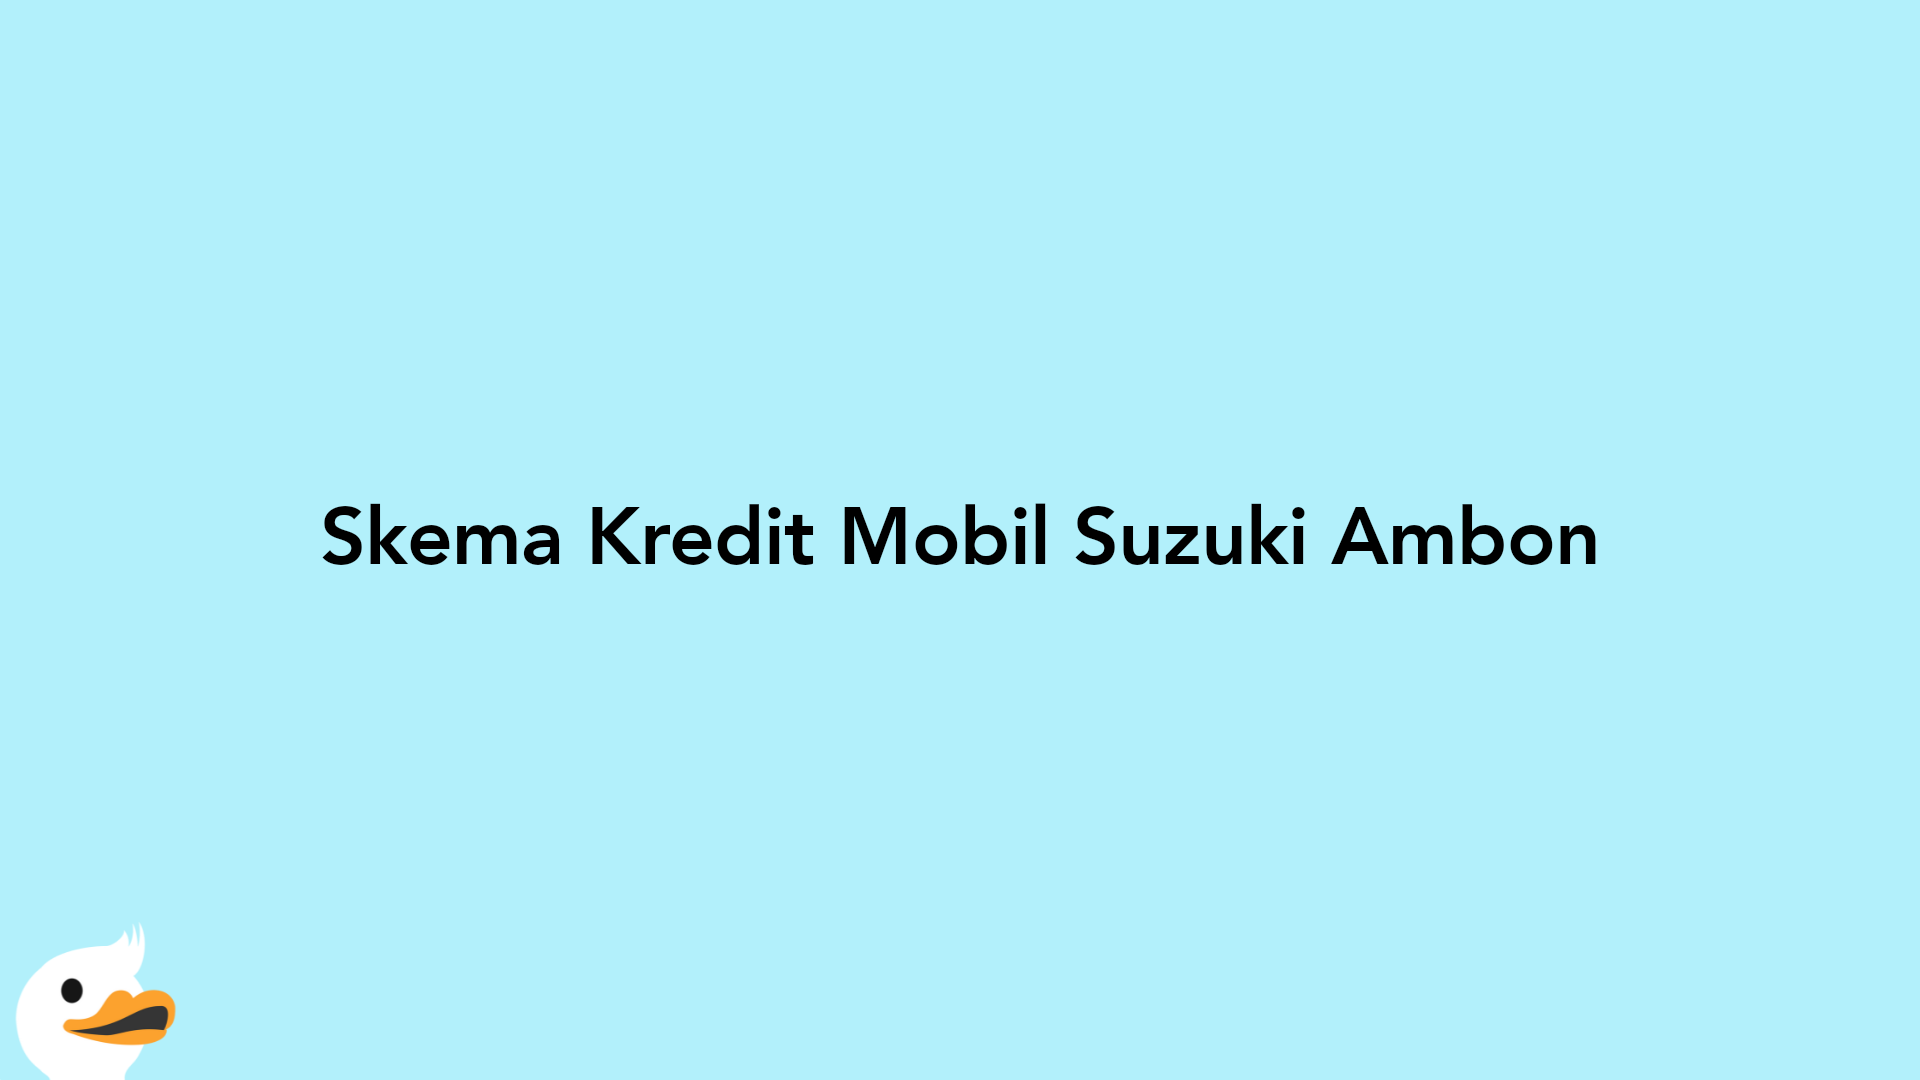 Skema Kredit Mobil Suzuki Ambon